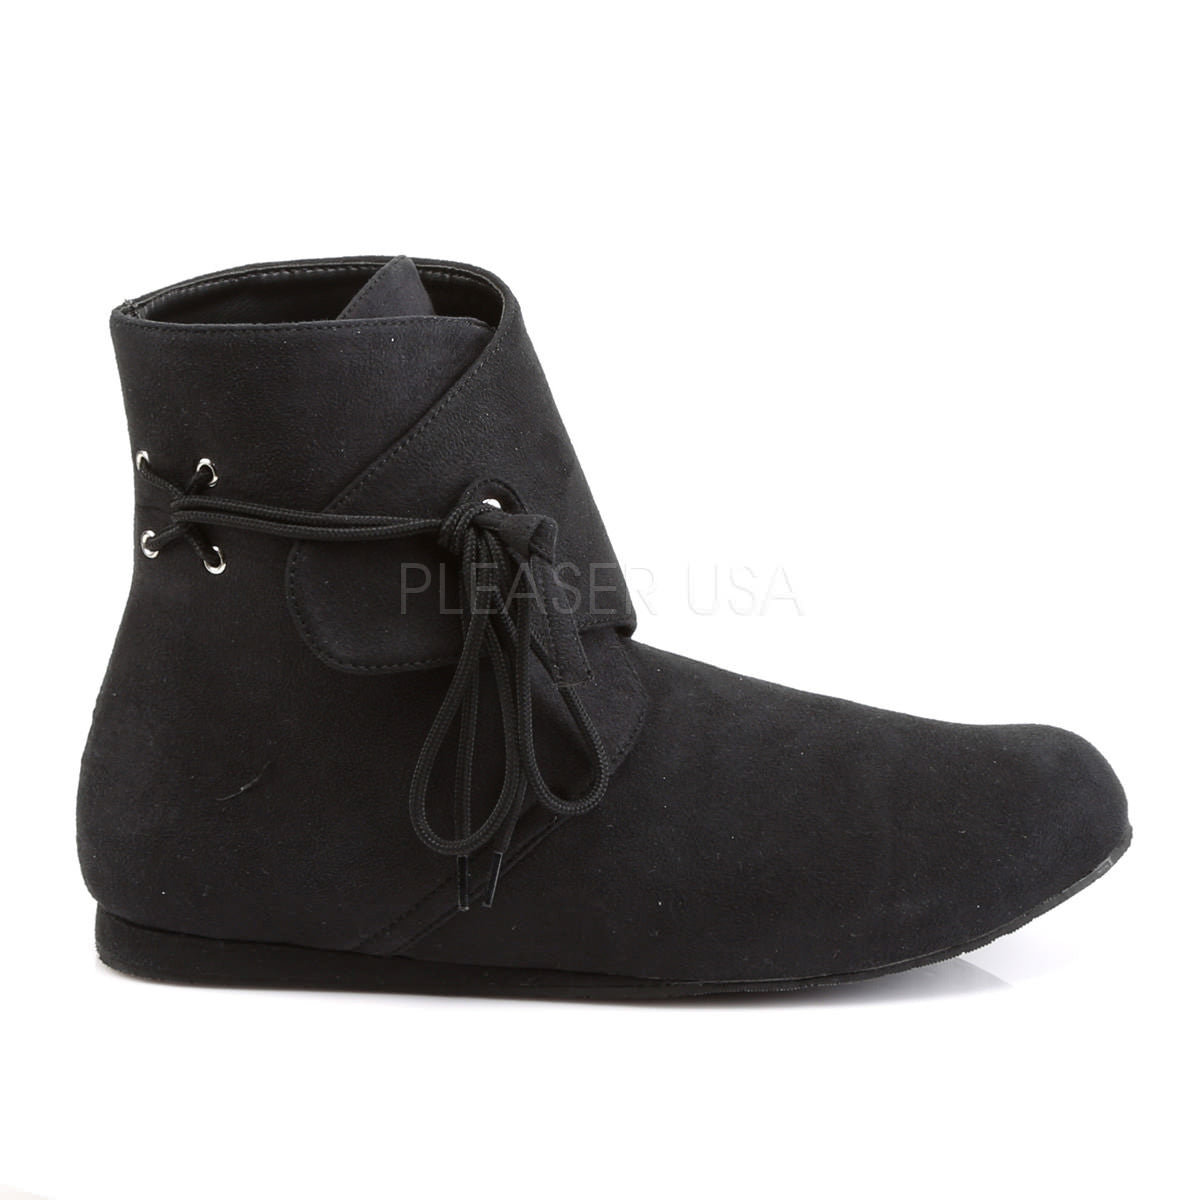 Men's Black Renaissance Ankle Boots